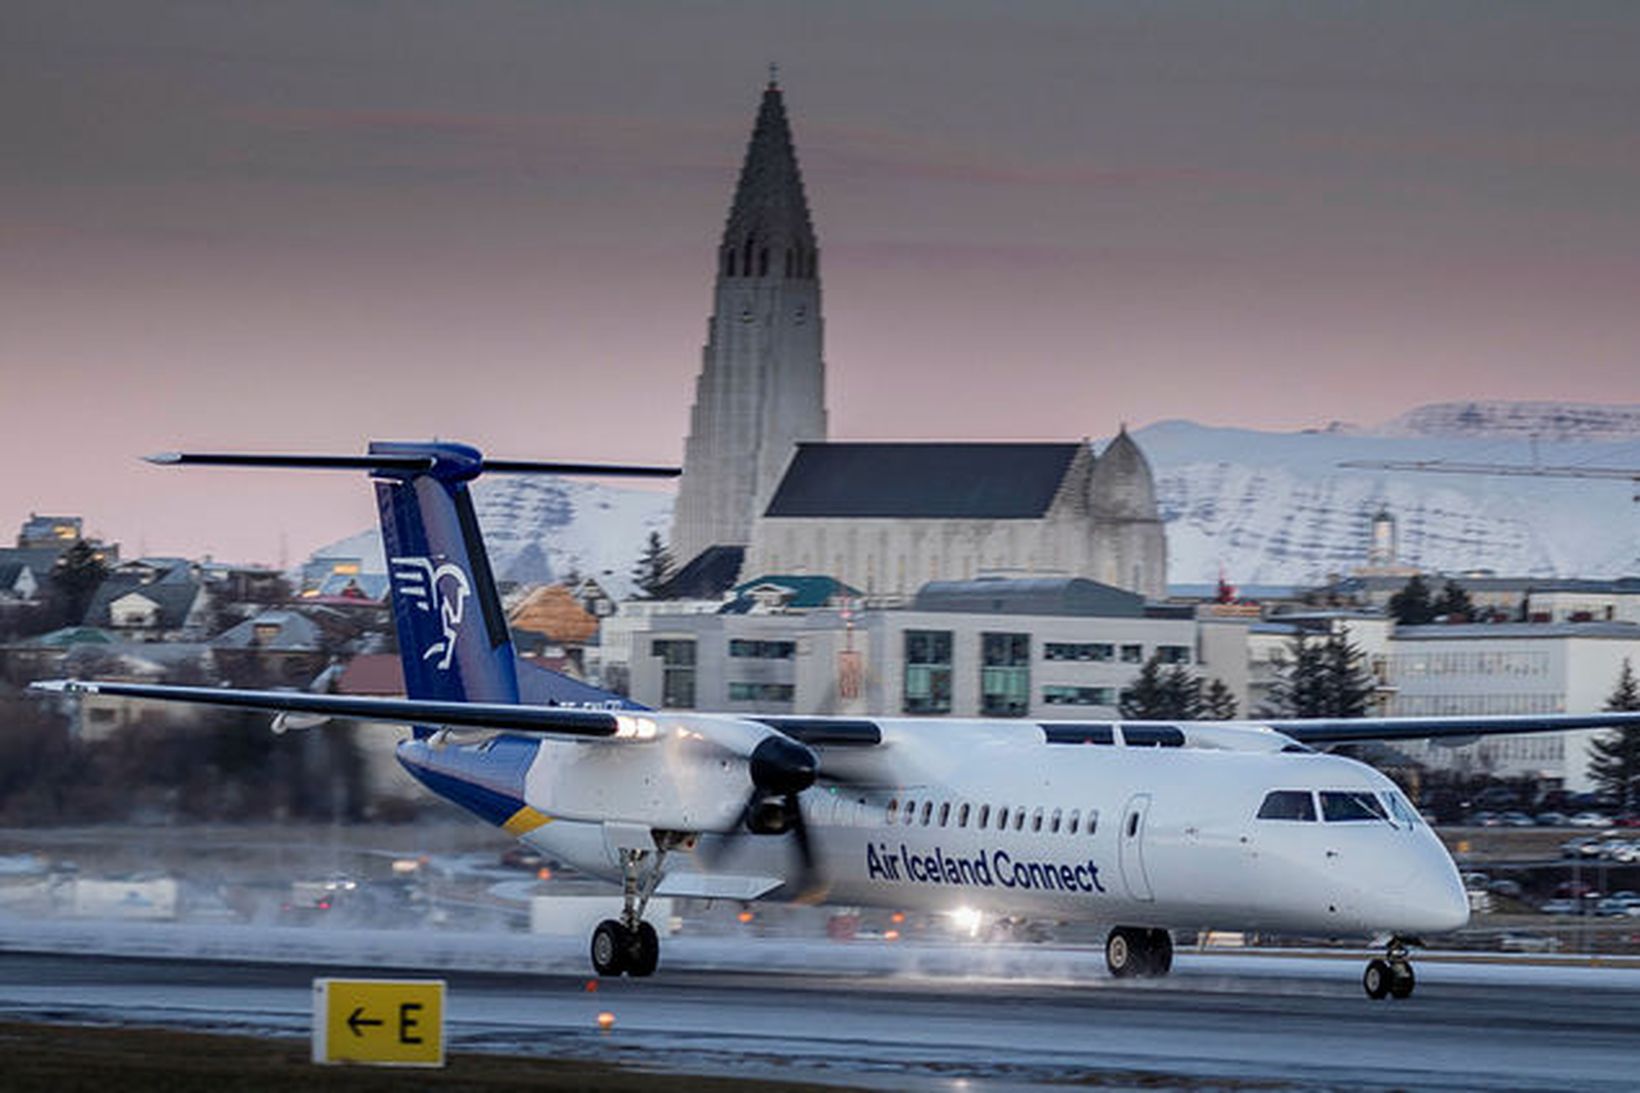 Morgunflugi Air Iceland Connect til Akureyrar, Egilsstaða og Ísafjarðar hefur …